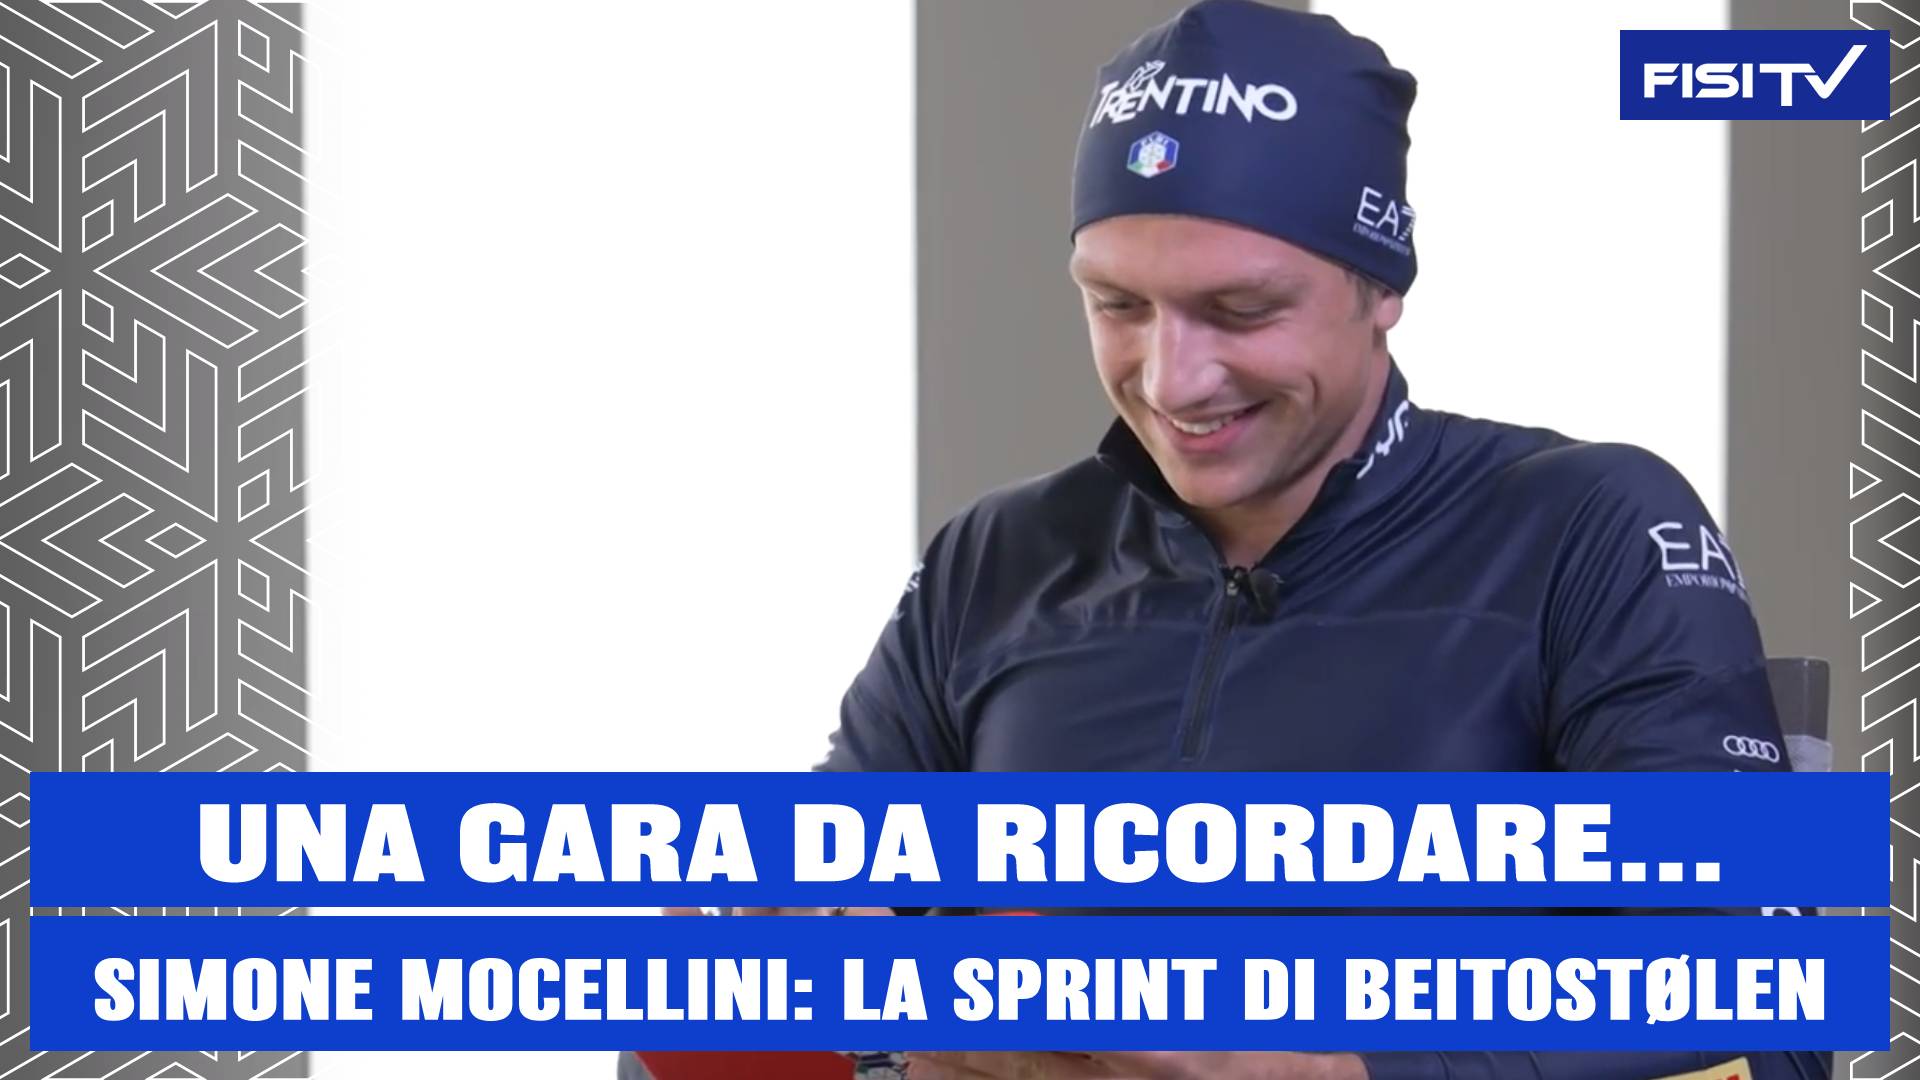 Una gara da ricordare…Simone Mocellini: secondo posto nella sprint di Beitostølen | FISI TV